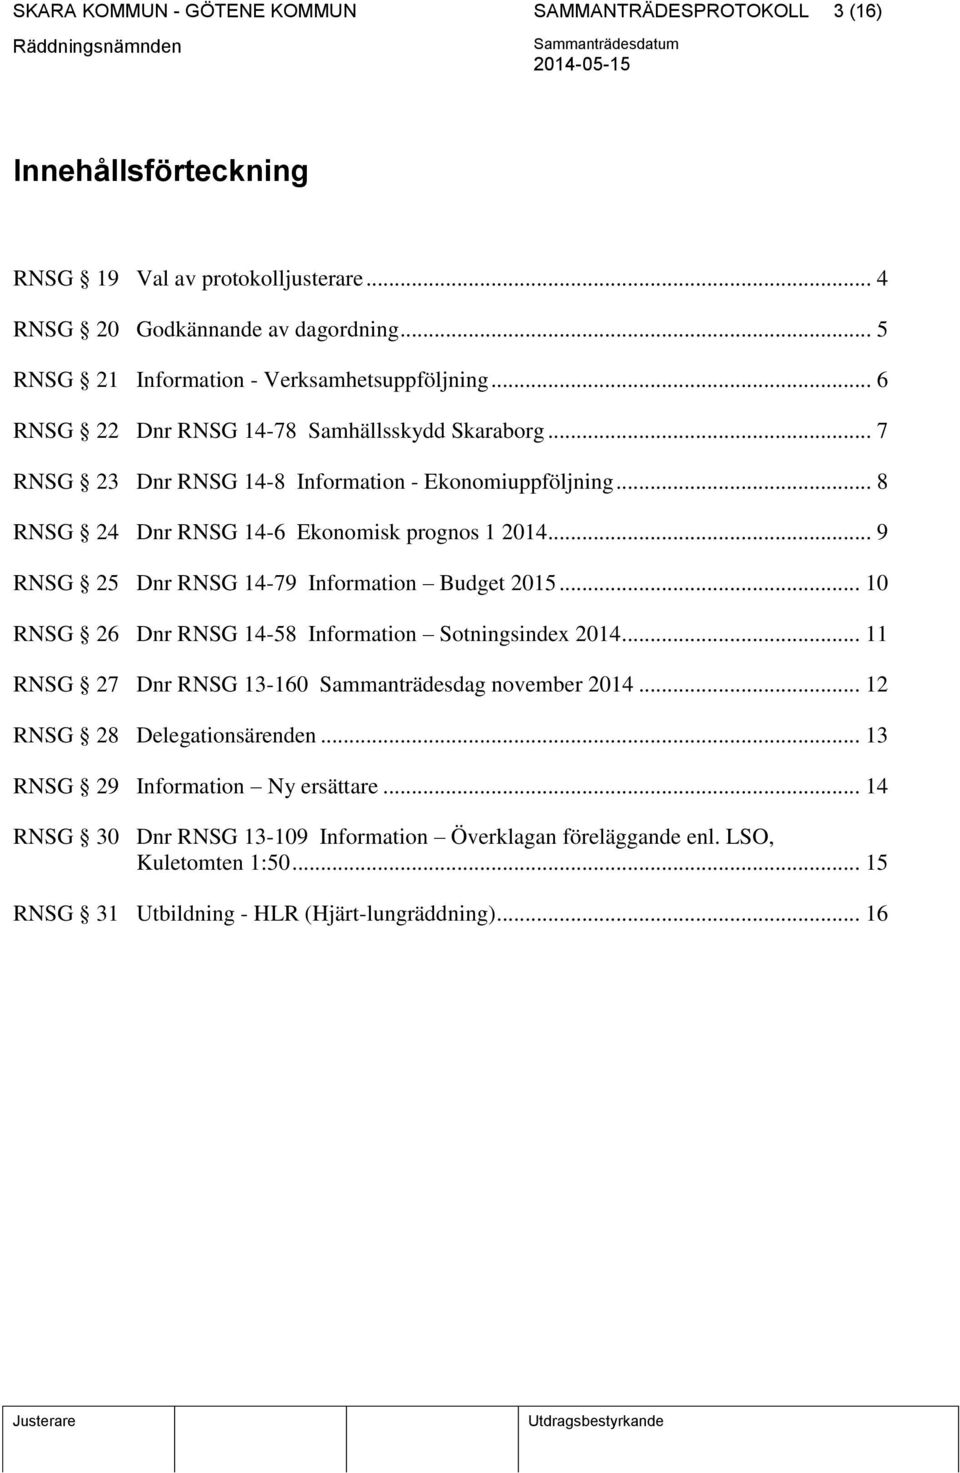 .. 8 RNSG 24 Dnr RNSG 14-6 Ekonomisk prognos 1 2014... 9 RNSG 25 Dnr RNSG 14-79 Information Budget 2015... 10 RNSG 26 Dnr RNSG 14-58 Information Sotningsindex 2014.